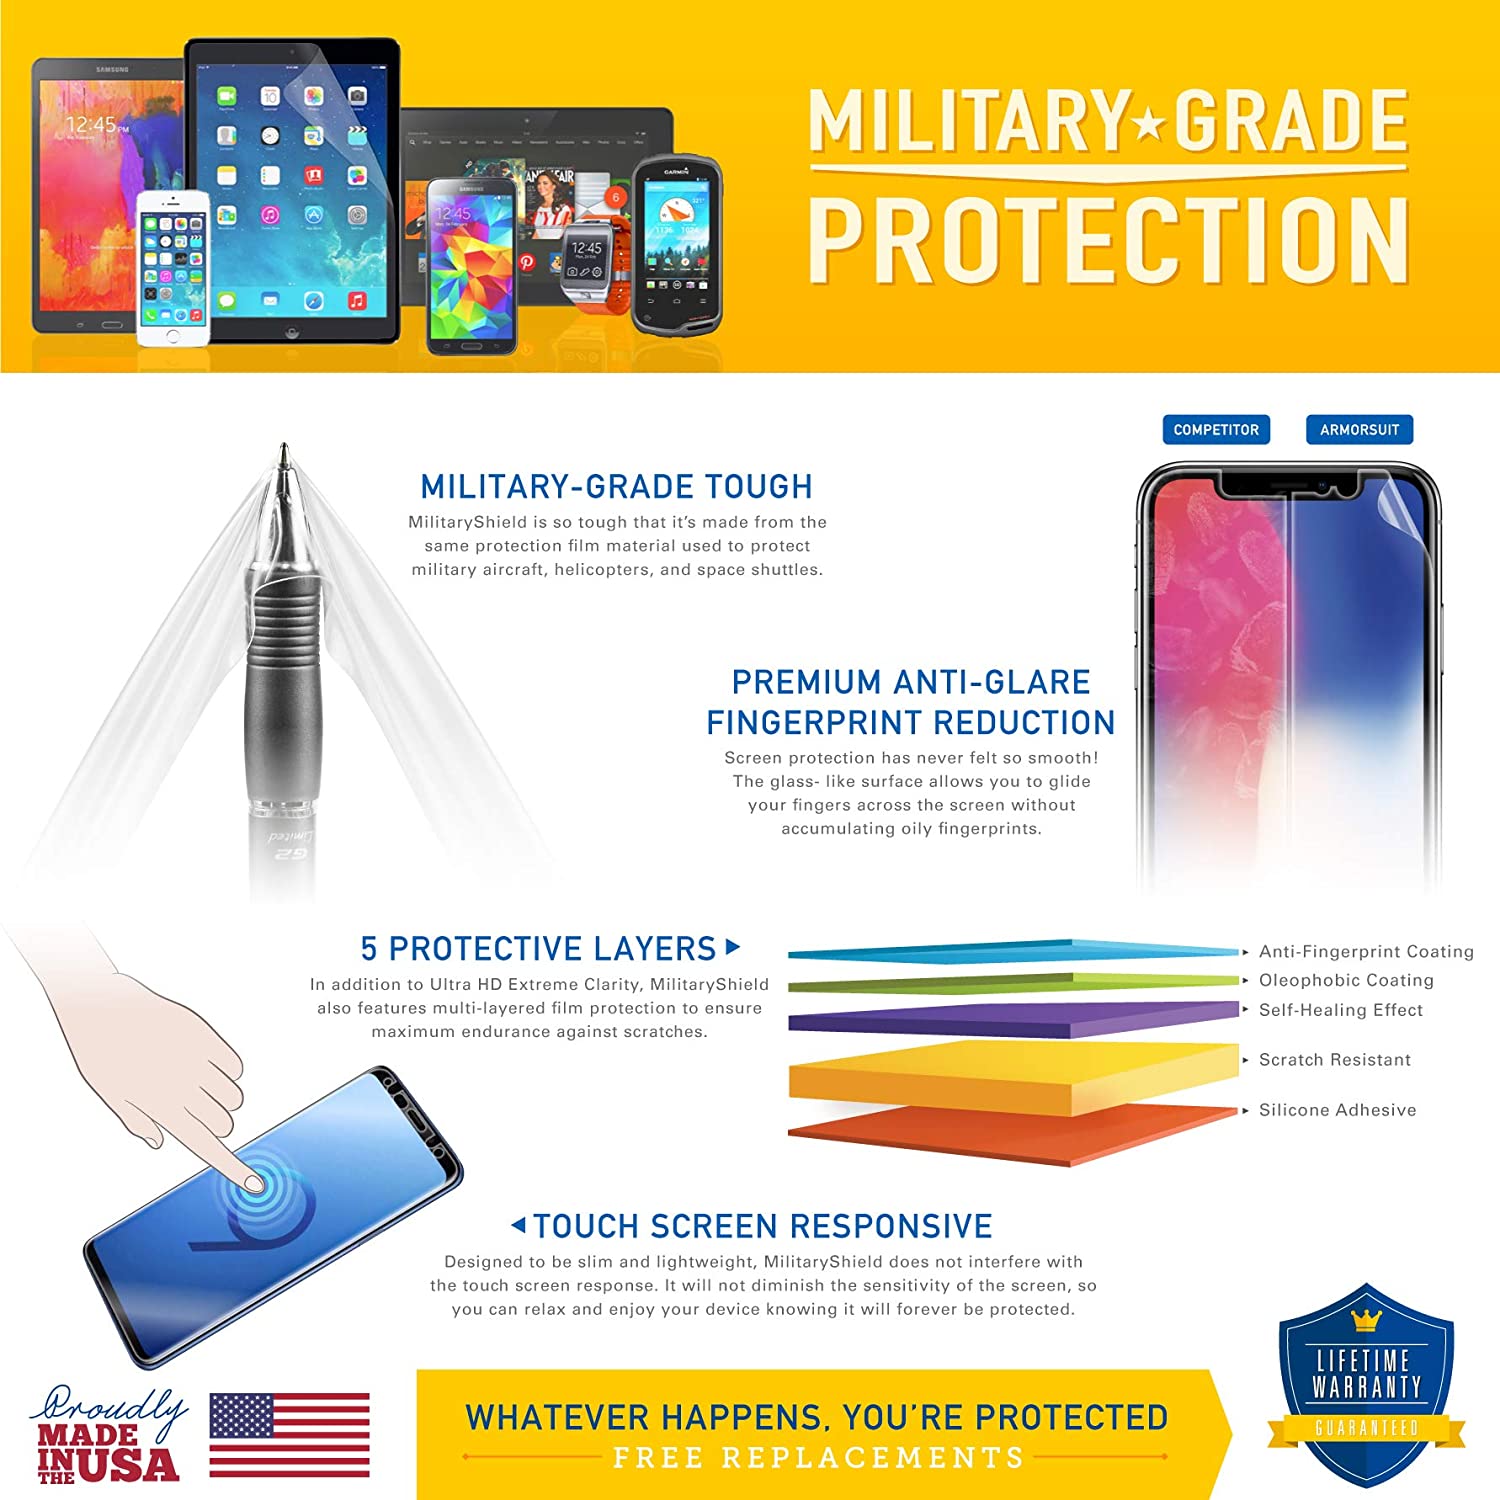 [2 Pack] Nokia E63 Screen Protector